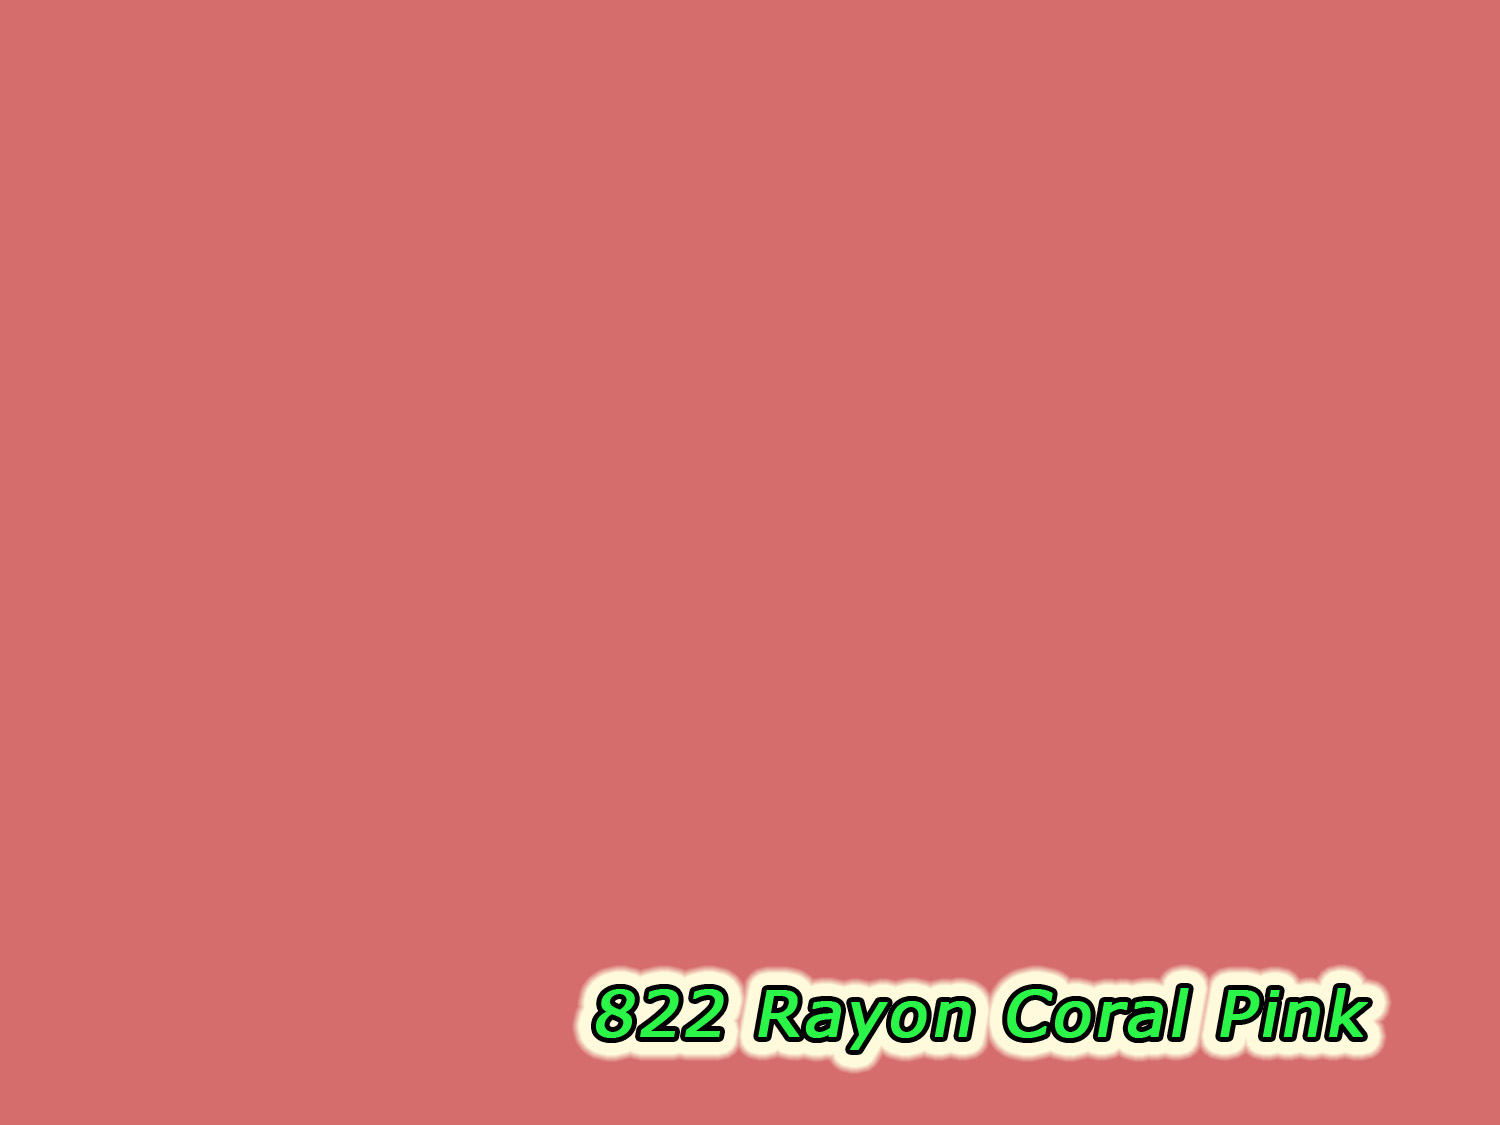 822 Rayon Coral Pink